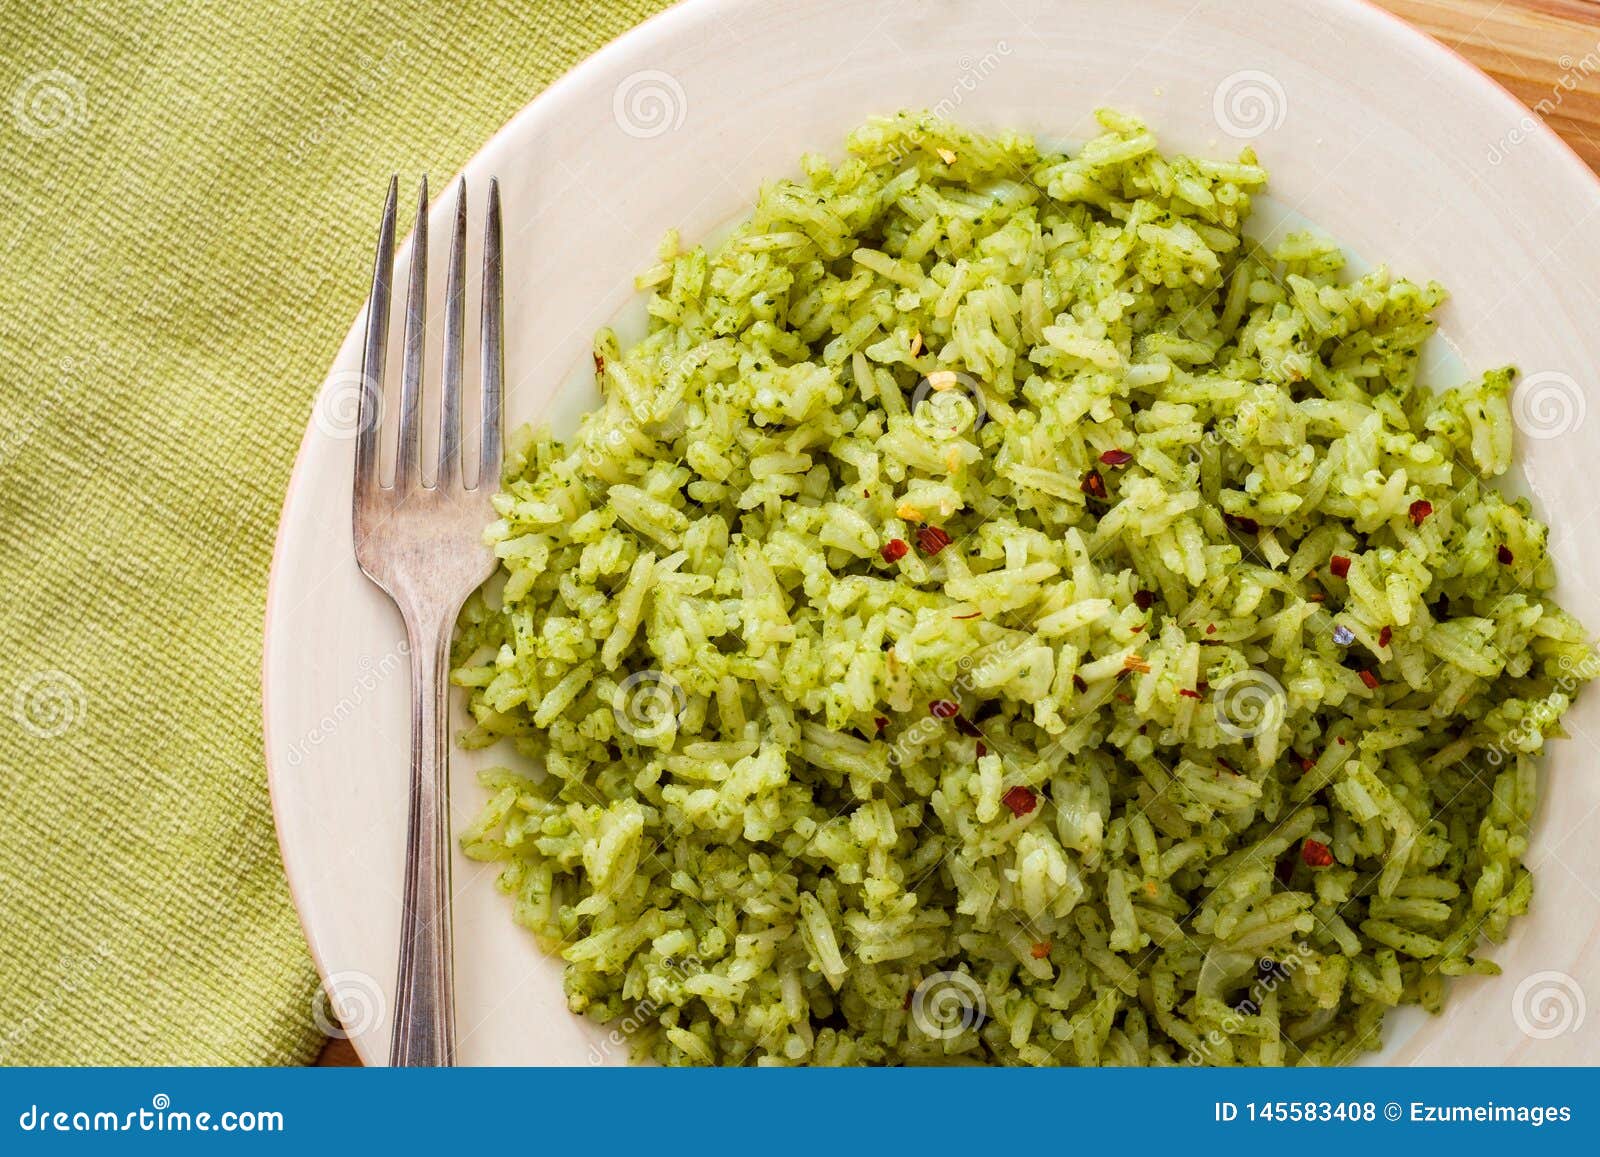 Рис зеленого цвета. Зеленый рис. Мексиканский зеленый рис.. Зеленый рис рецепт. Рис в зеленой коробке.